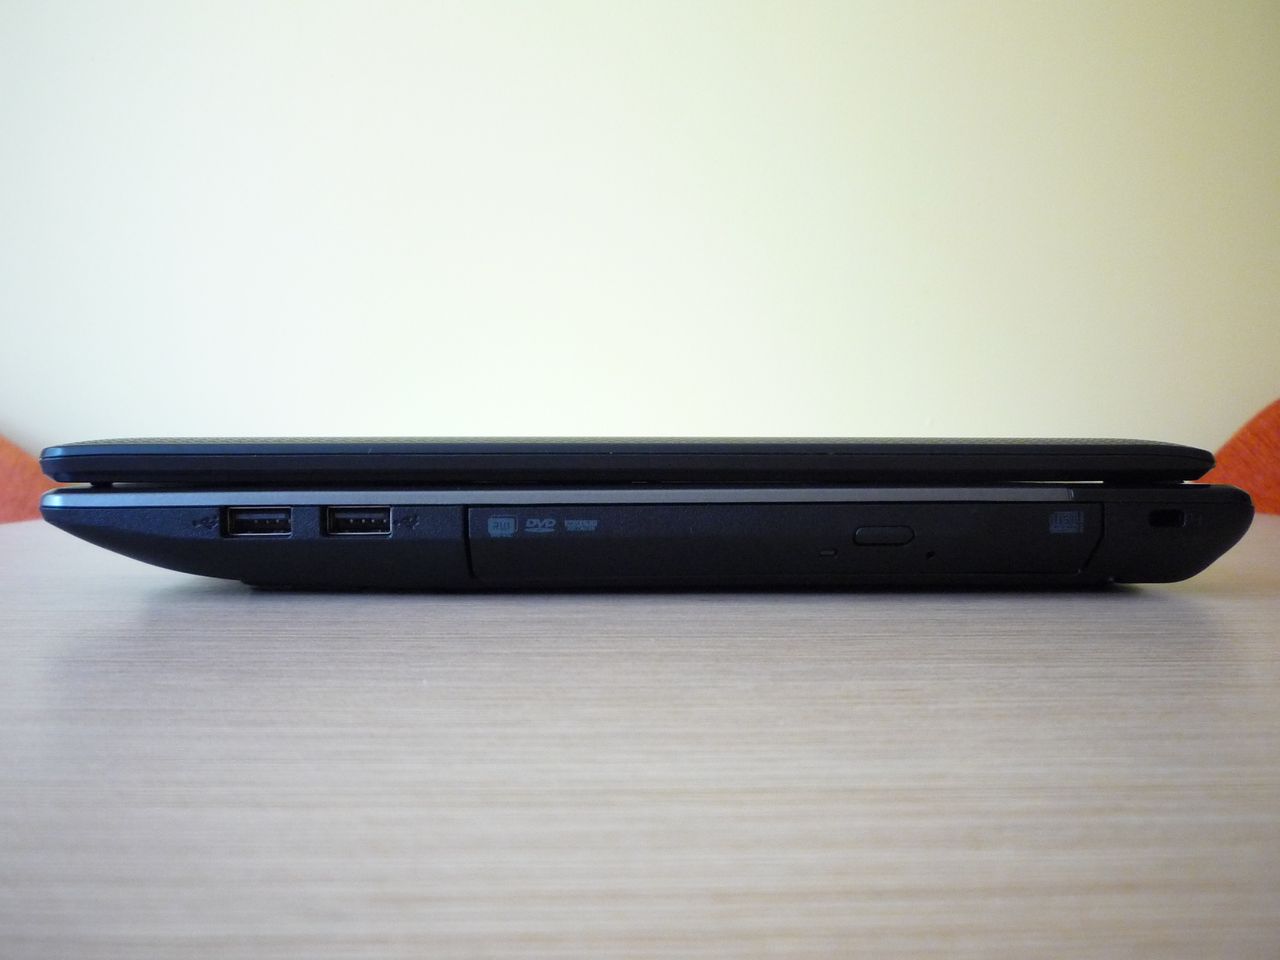 Acer Aspire 5560G - ścianka prawa (od lewej: 2 x USB 2.0, tacka napędu, gniazdo Kensington Lock)